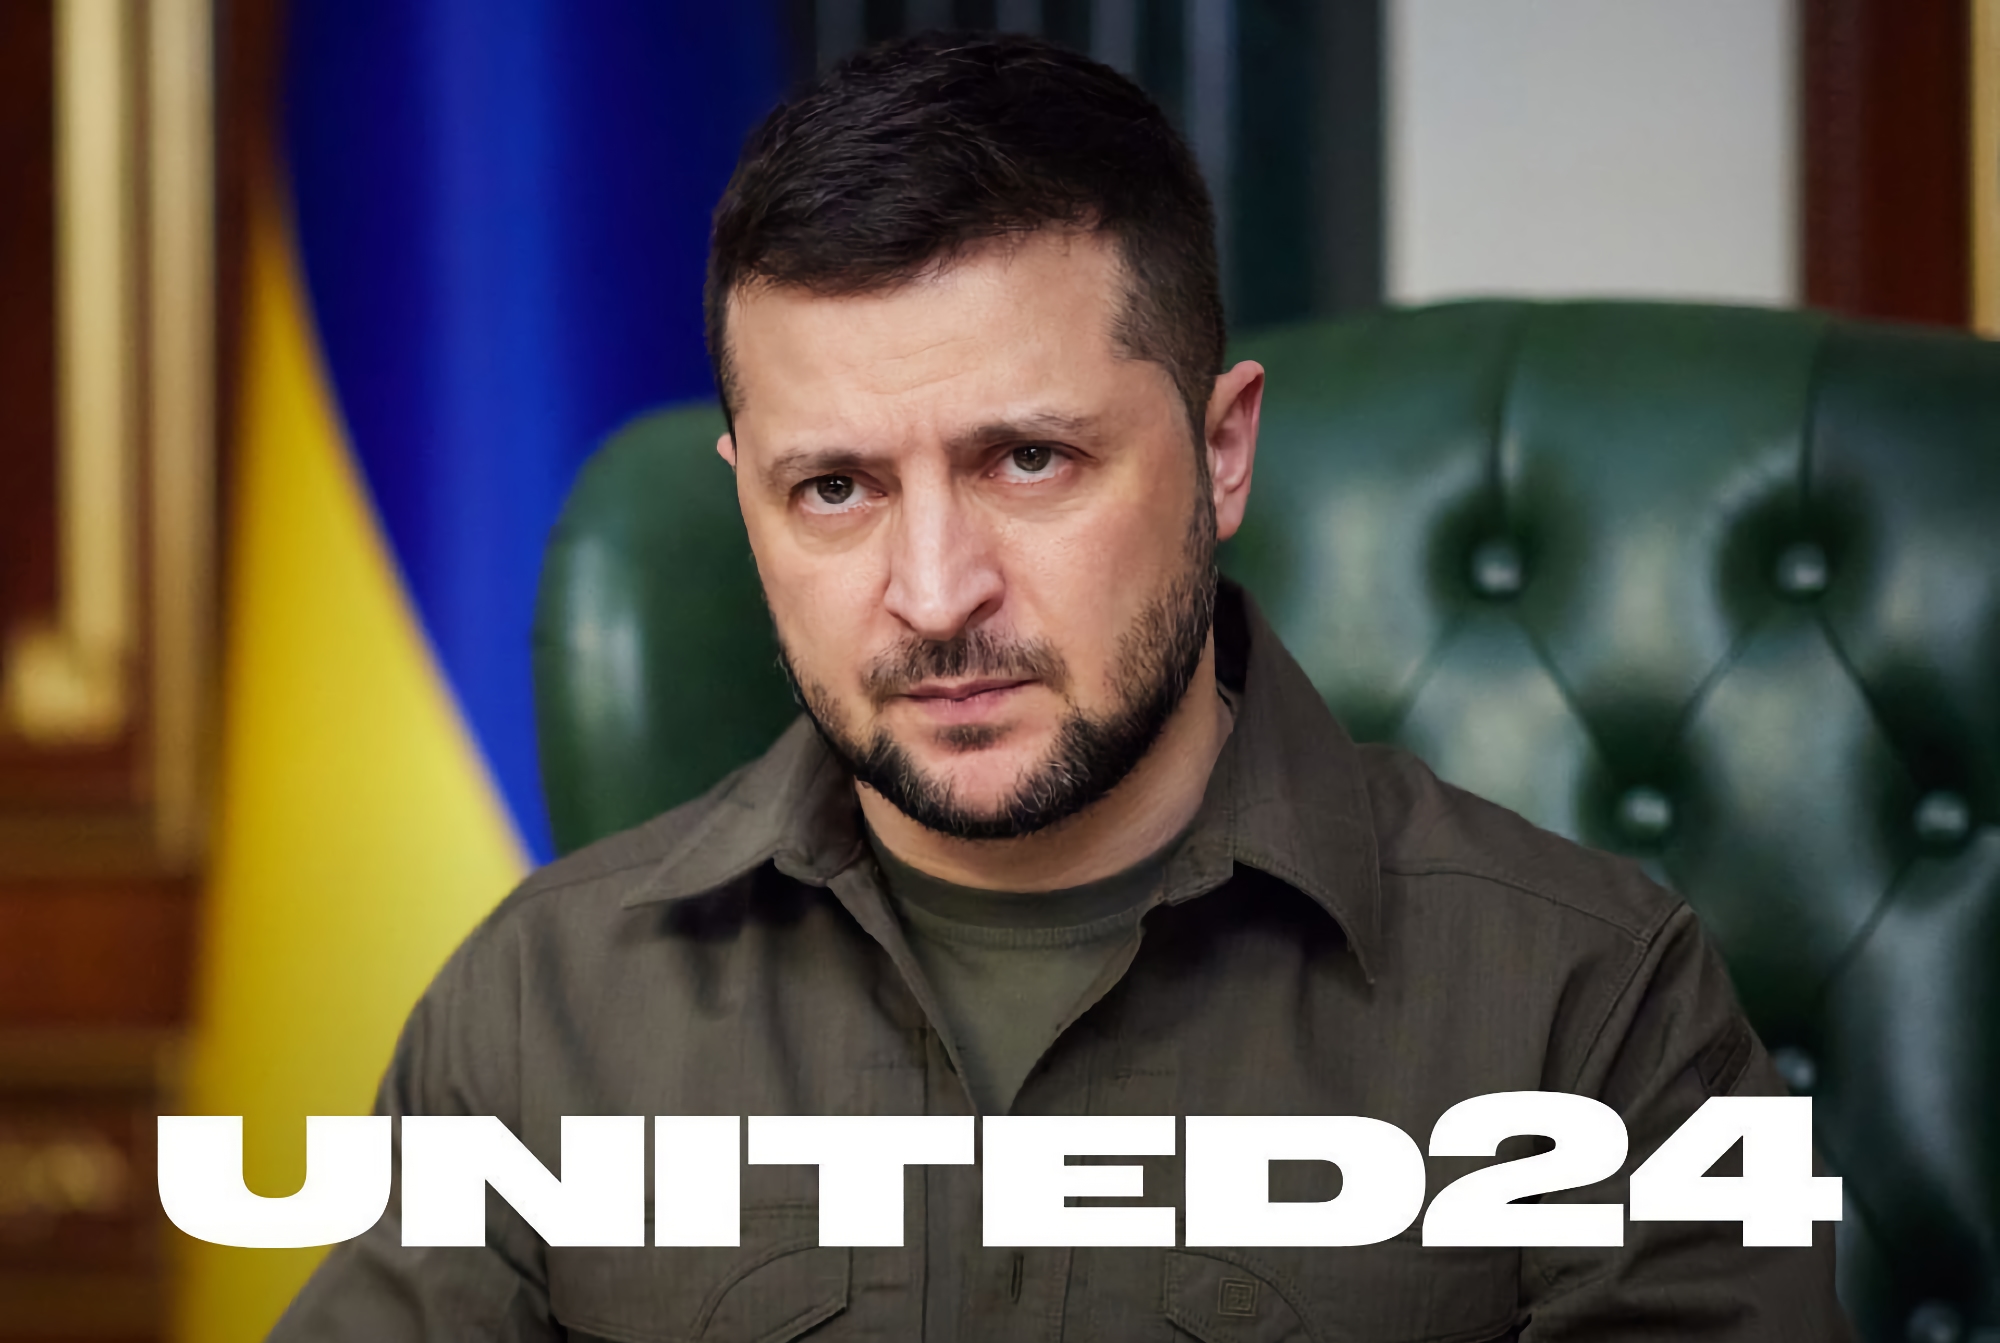 110 країн світу долучилися до збору коштів через UNITED24 на підтримку України